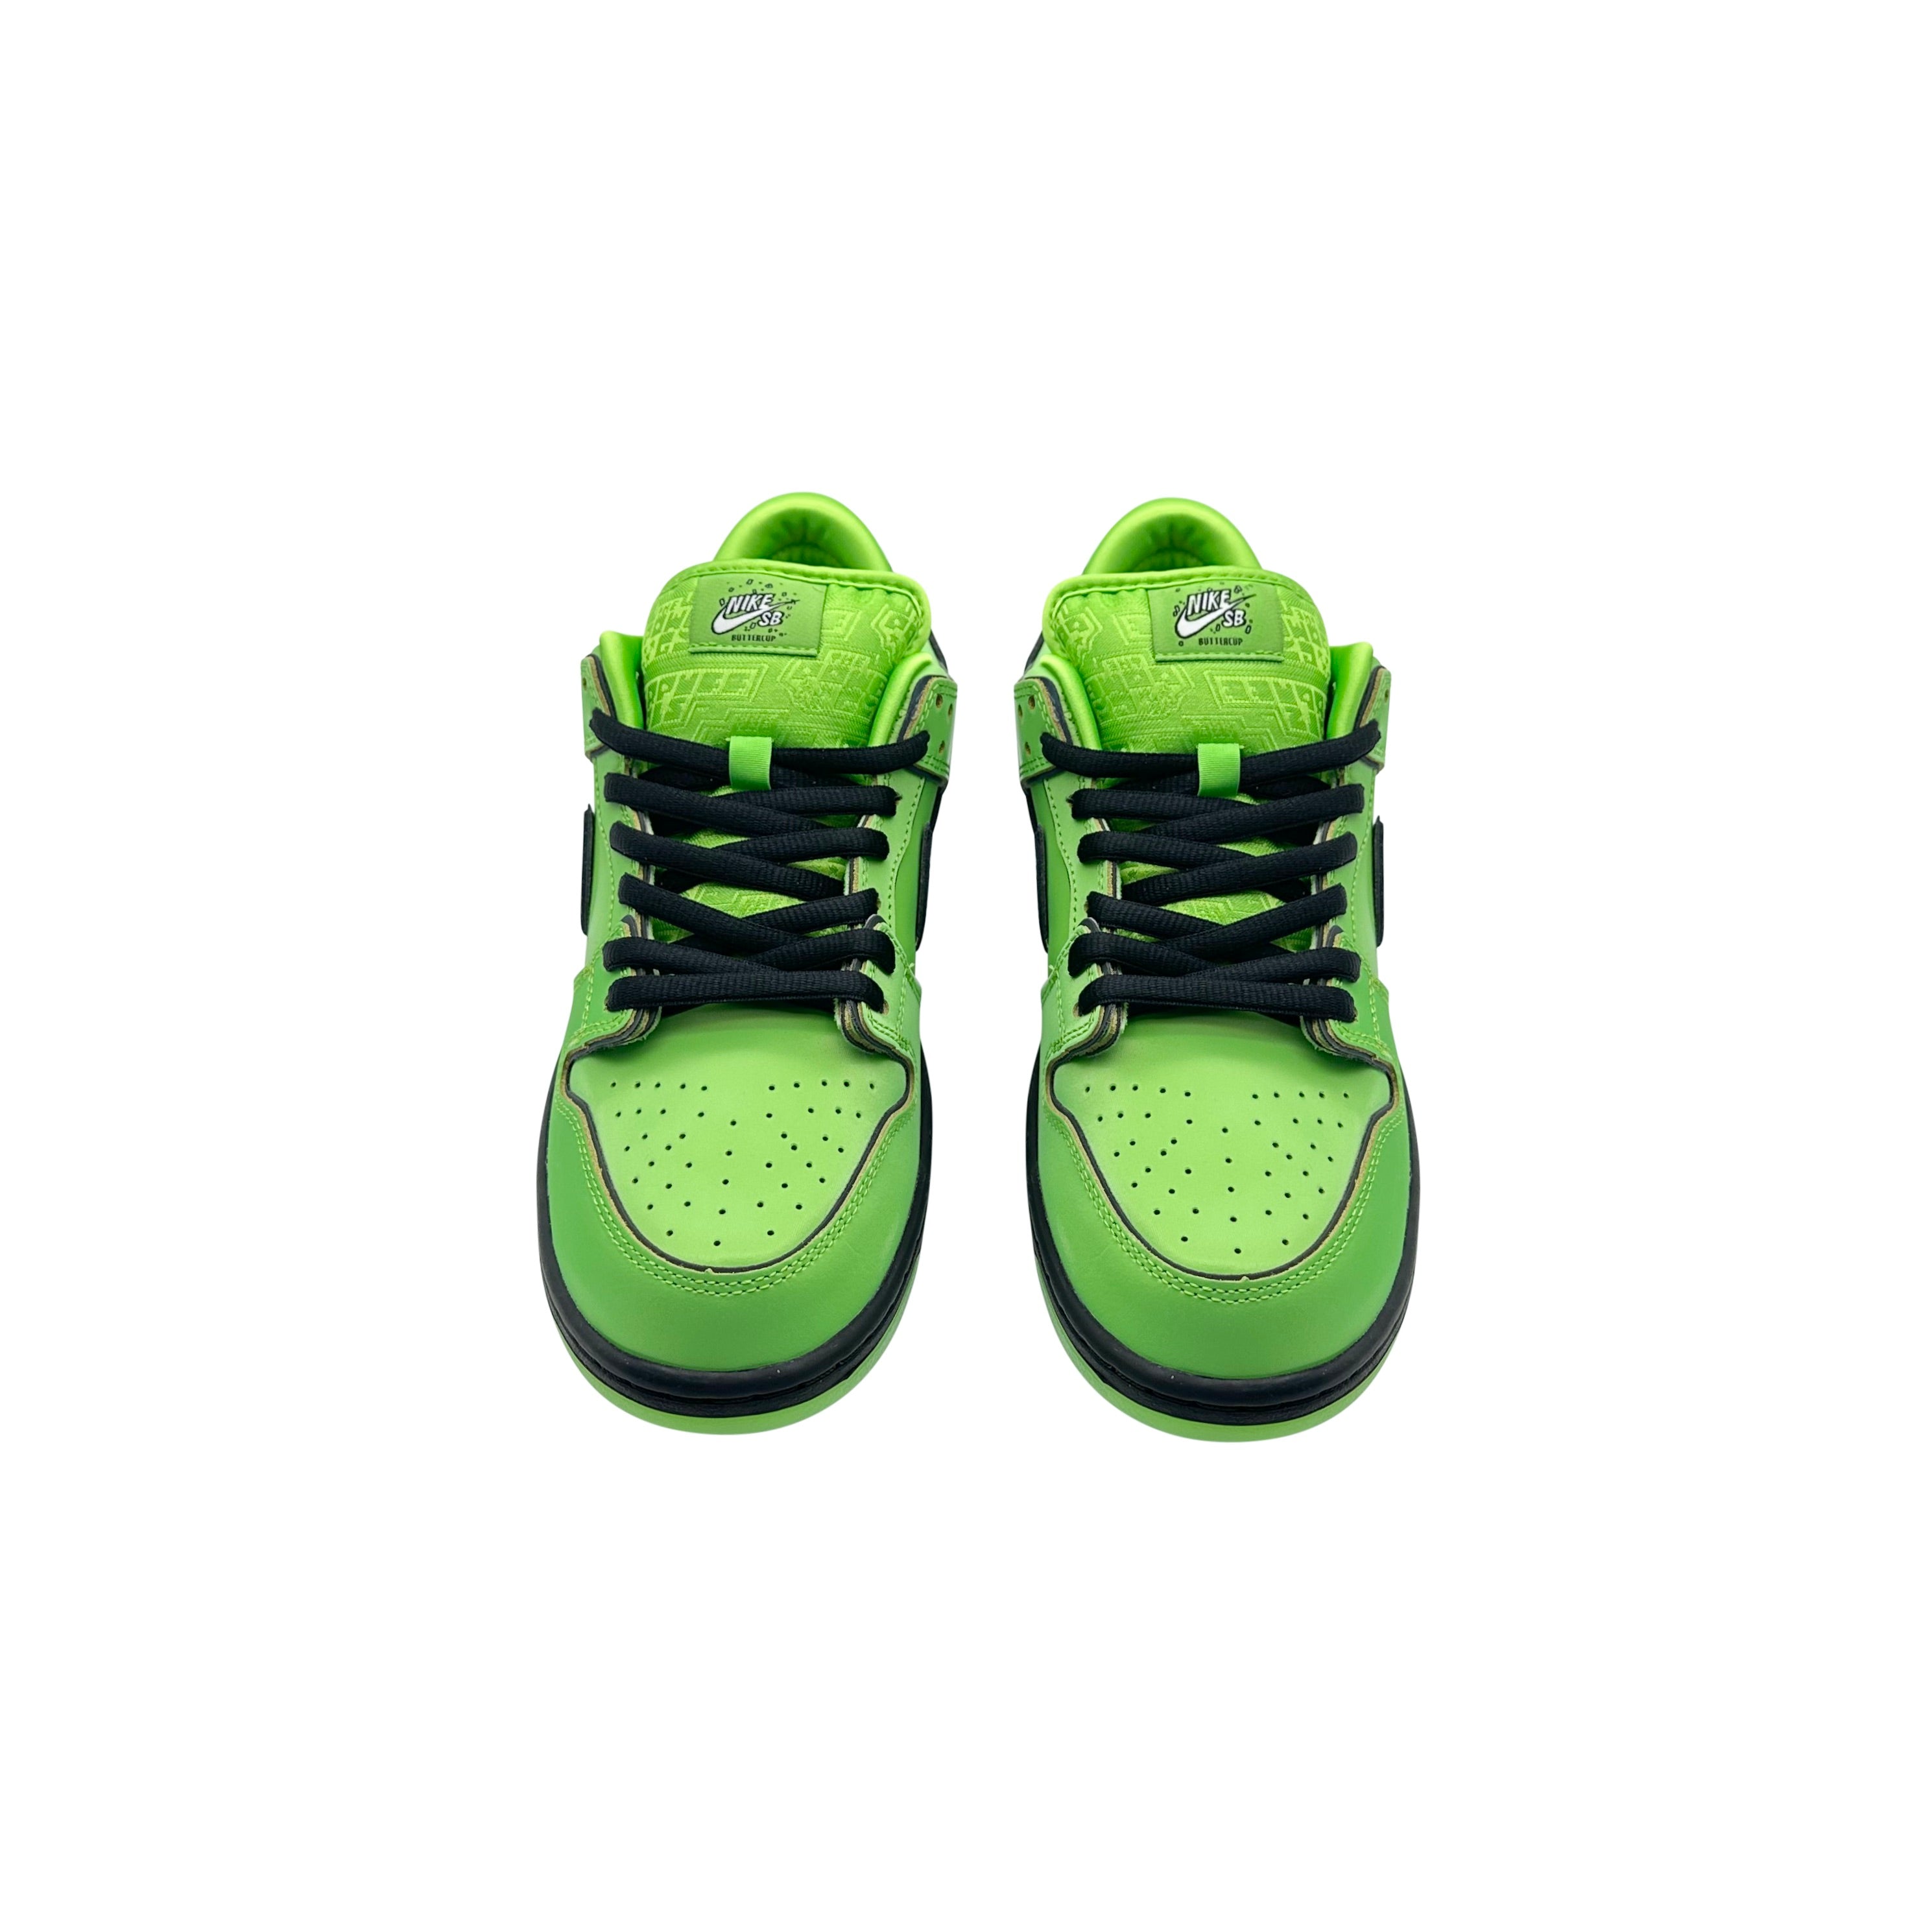 Nike SB Dunk Low Pro The Powerpuff Girls Buttercup Green